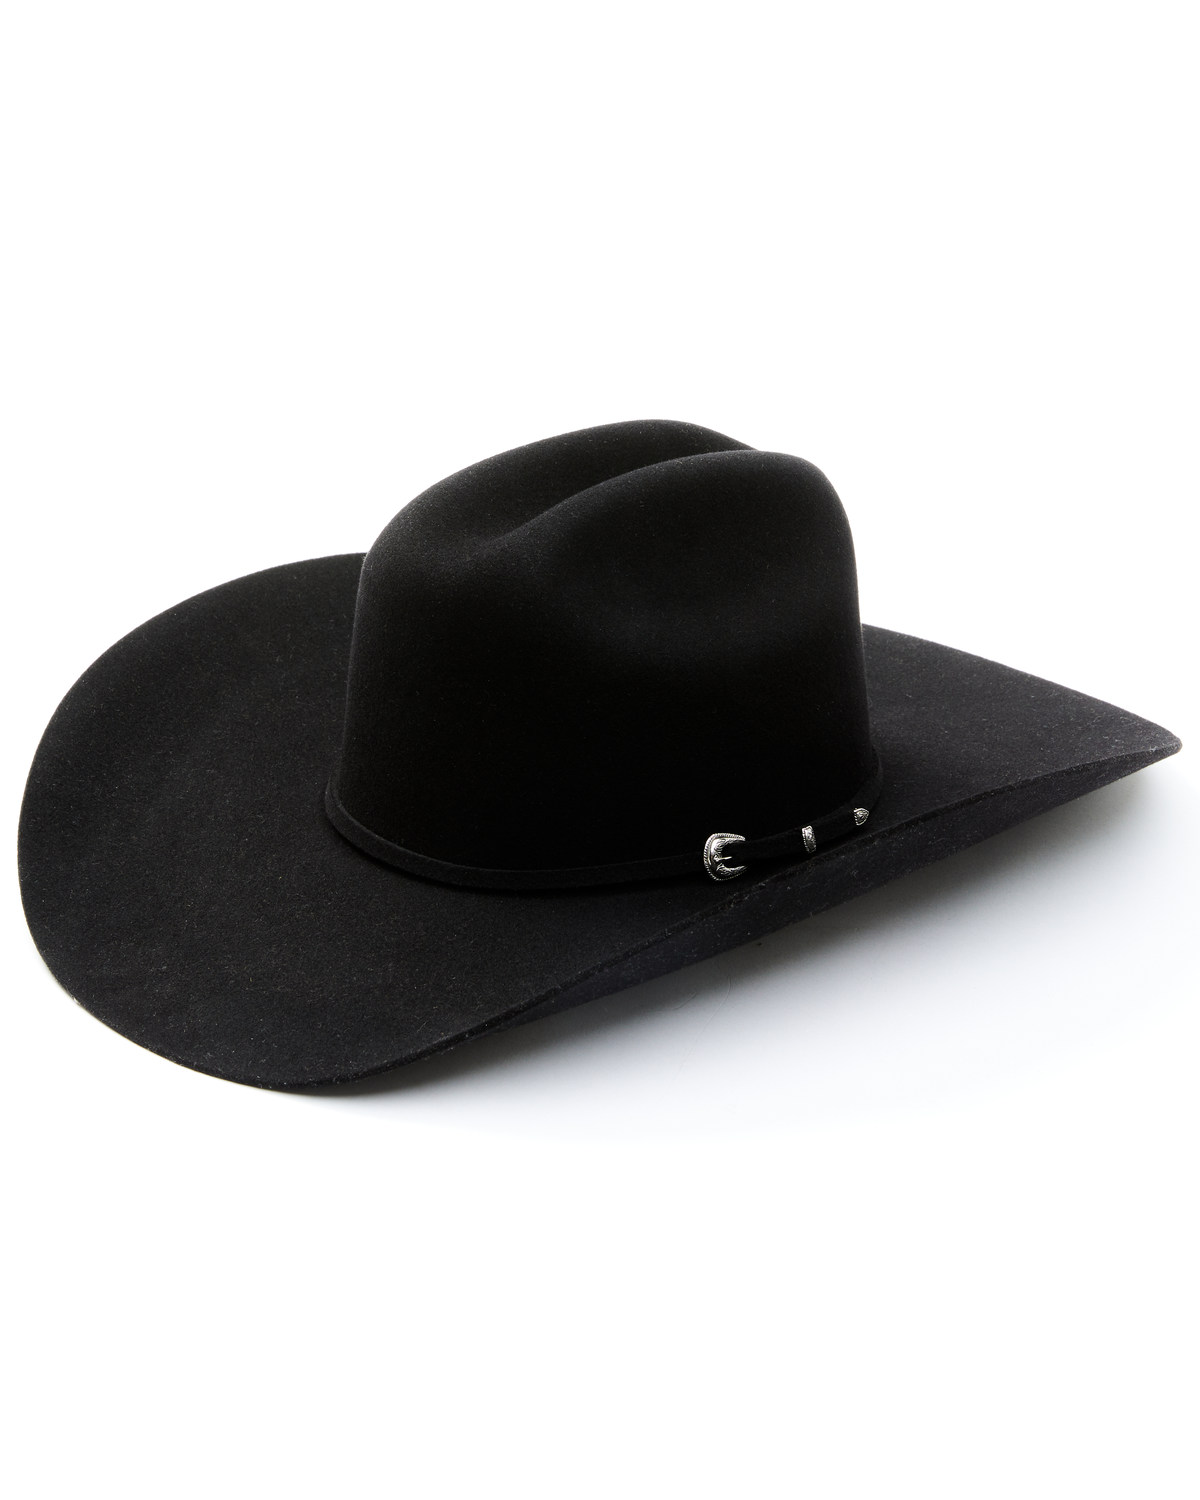 Cody James Colt 5X Felt Cowboy Hat